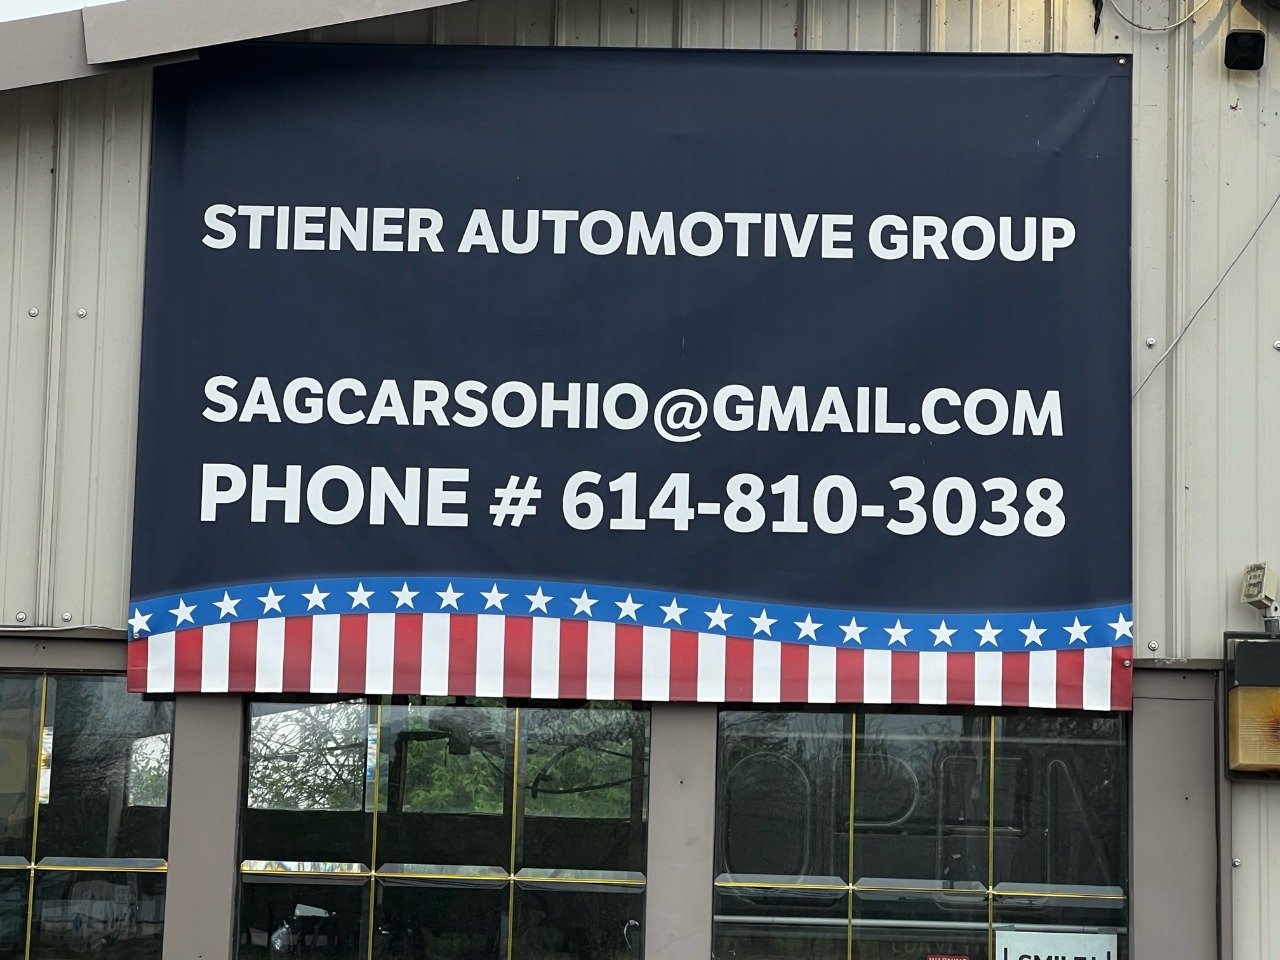 Stiener Automotive Group